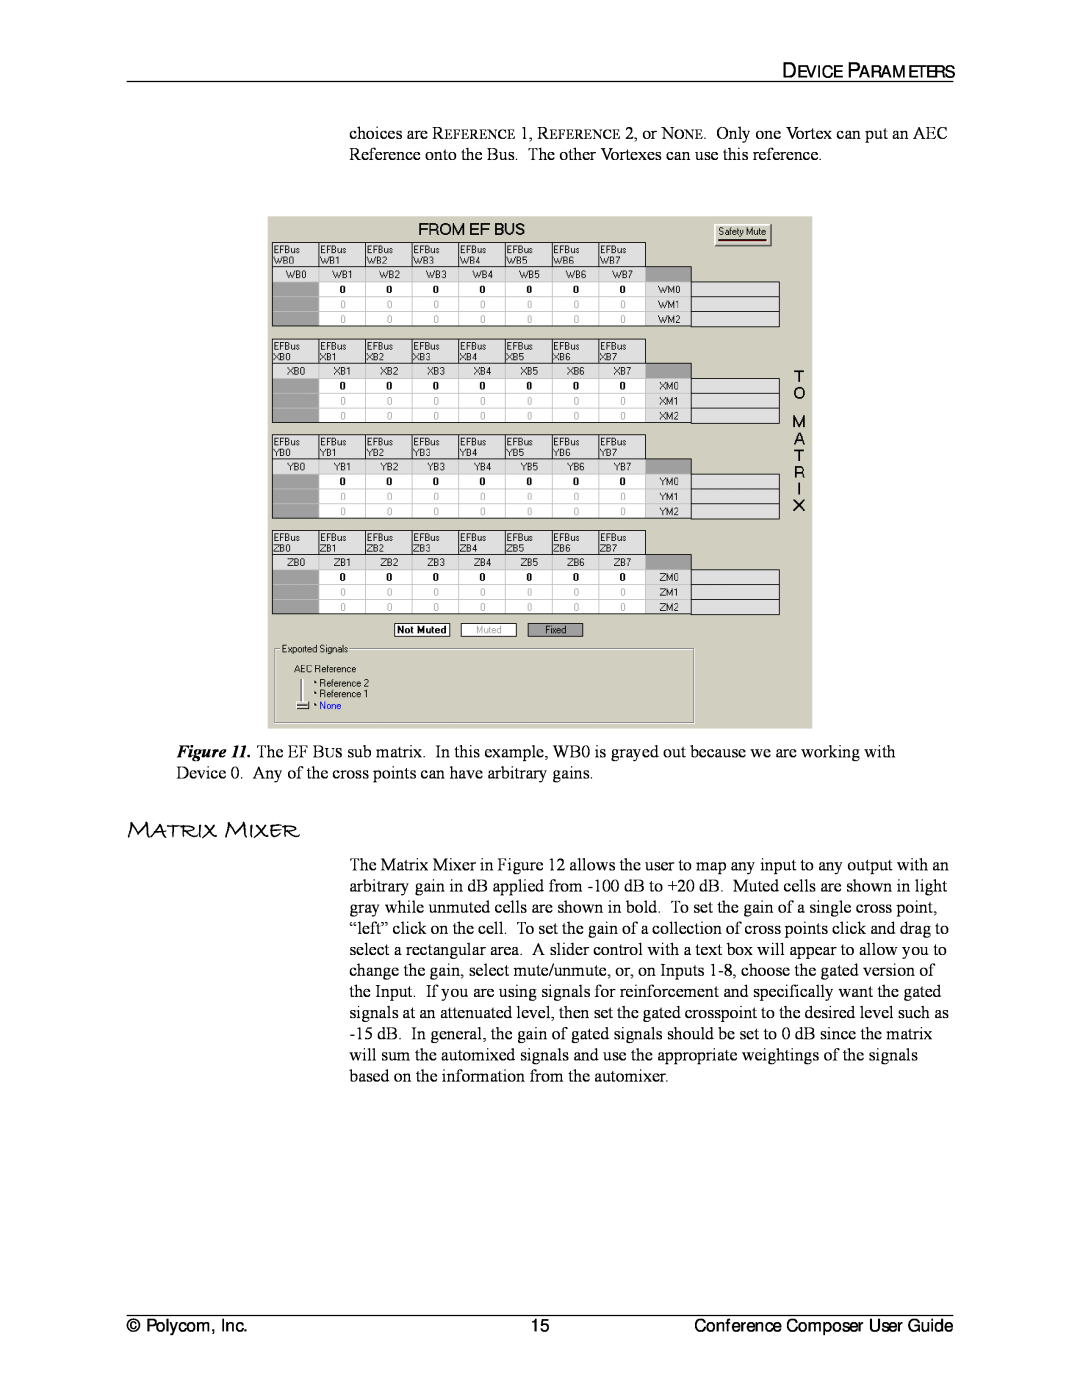 Polycom CCUG-0100-01 manual Matrix Mixer 